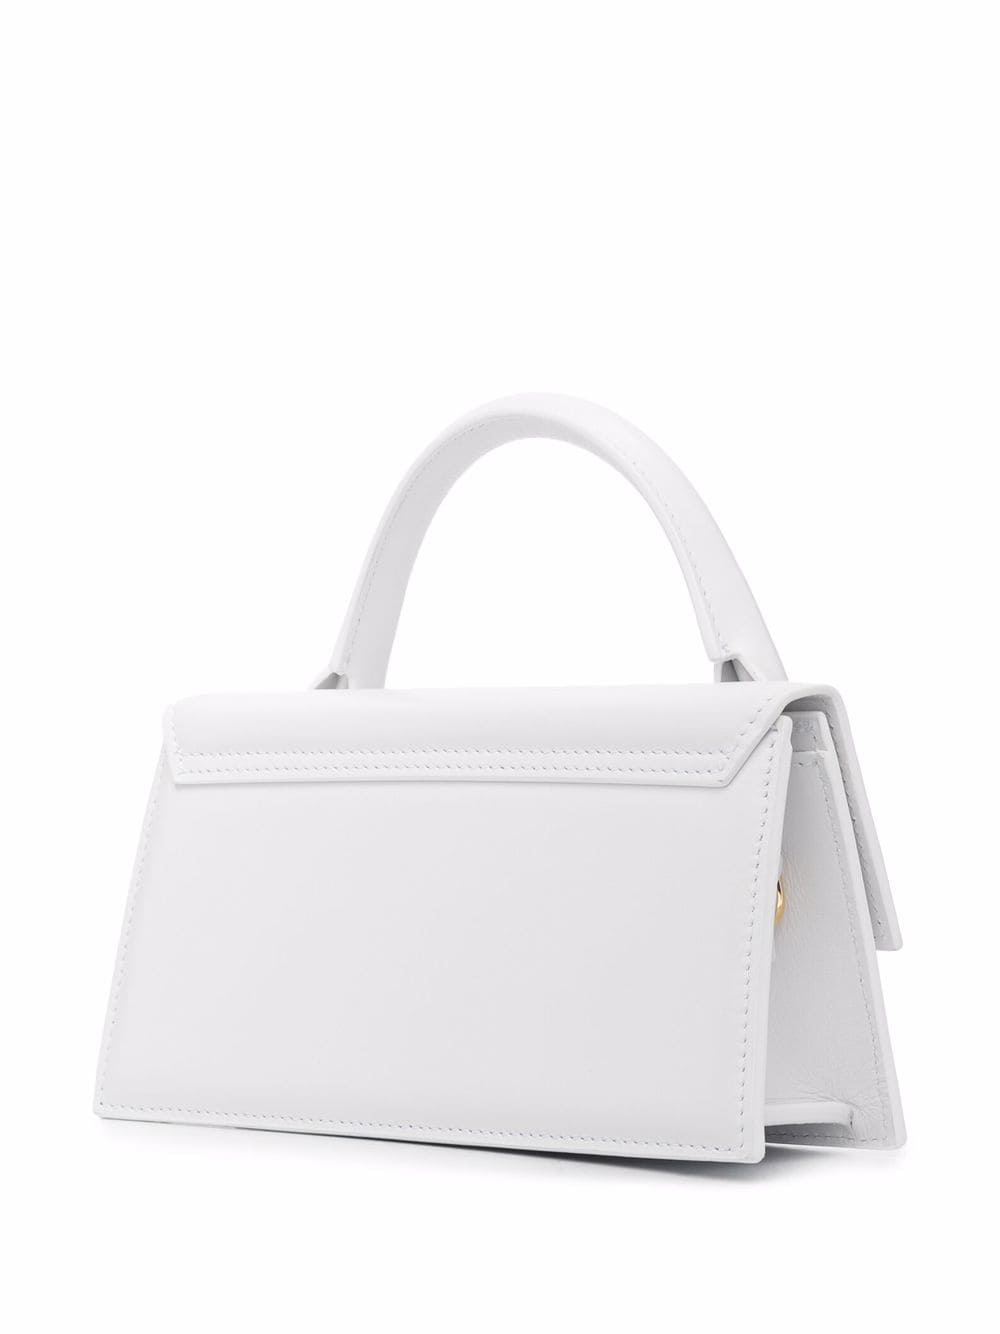 White Leather Long Tote Handbag for Women